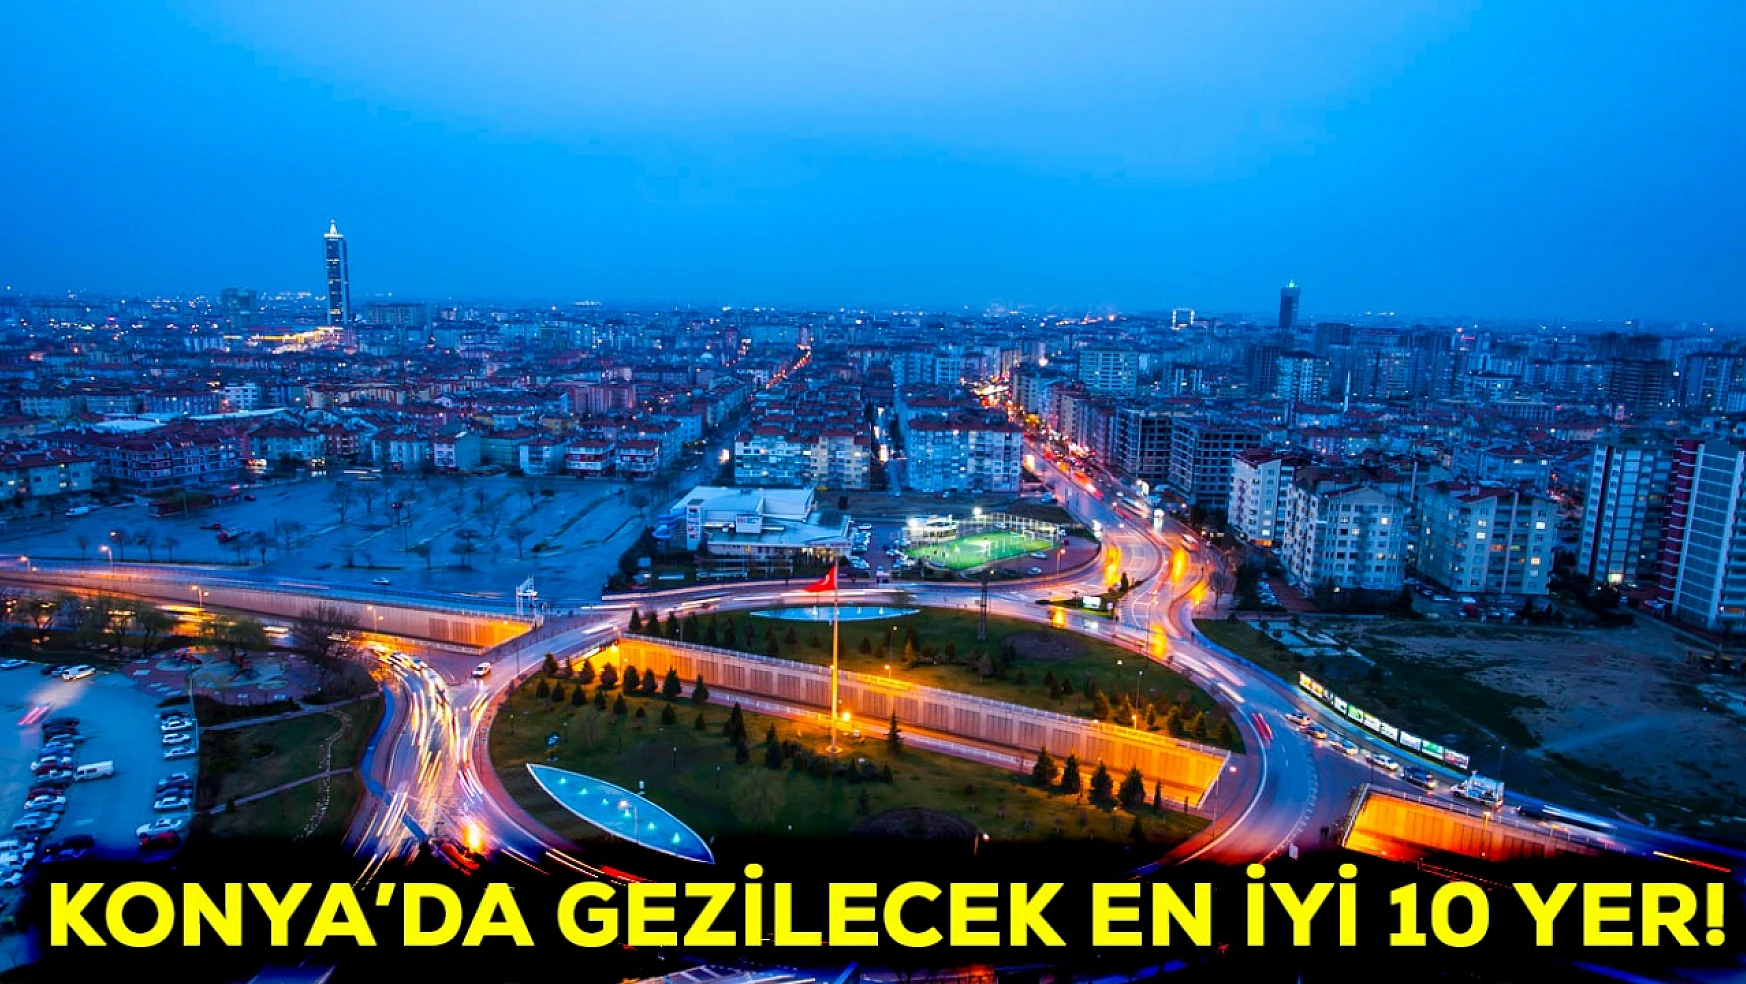 Konya'da gezilecek en iyi 10 yer!